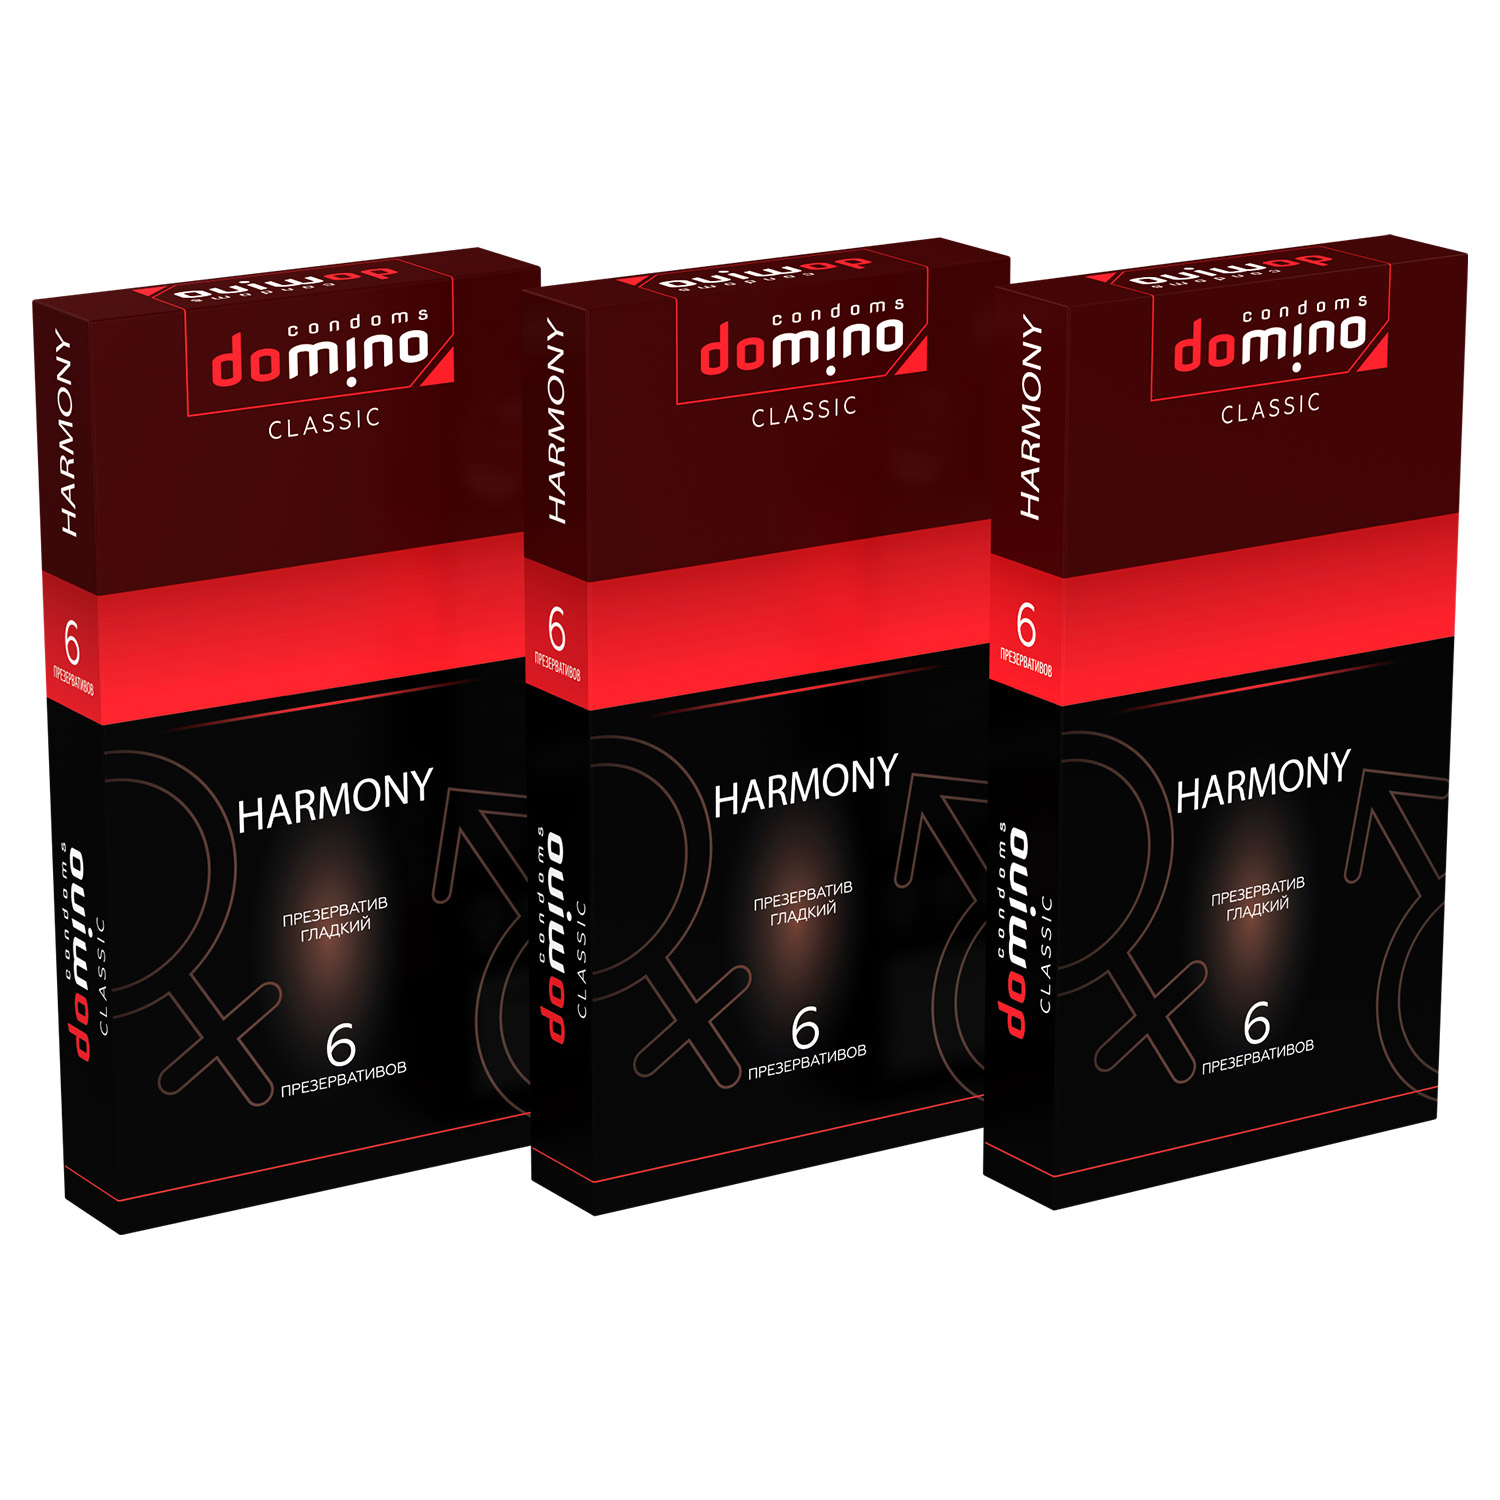 Купить Презервативы Domino Classic Harmony 6 шт комплект из 3 пачек